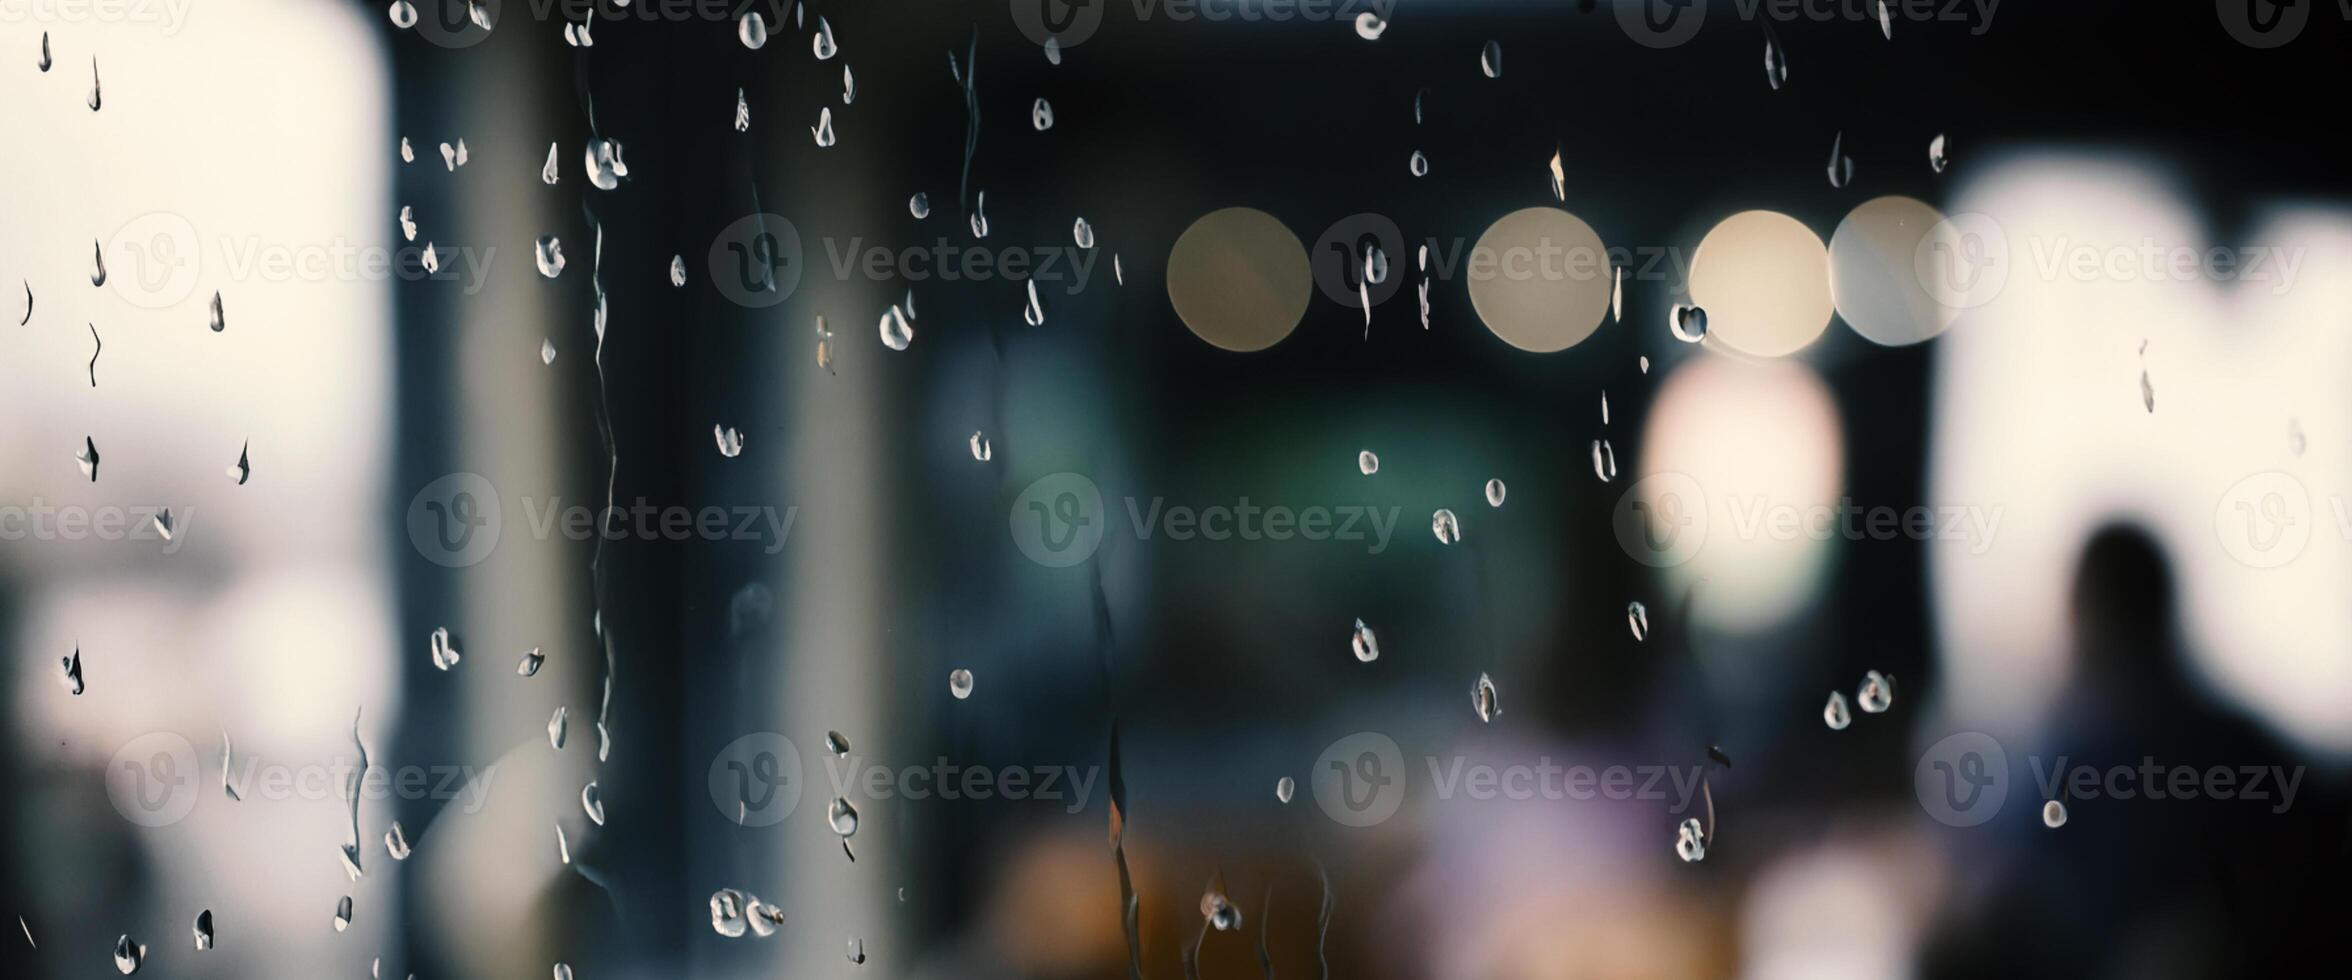 chuva solta em janela vidro do café fazer compras e embaçado cidade vida fundo. chuvoso estação e embaçado pessoas cidade dia vida ou bokeh noite luzes lado de fora janela. café fazer compras janela coberto com chuva água foto